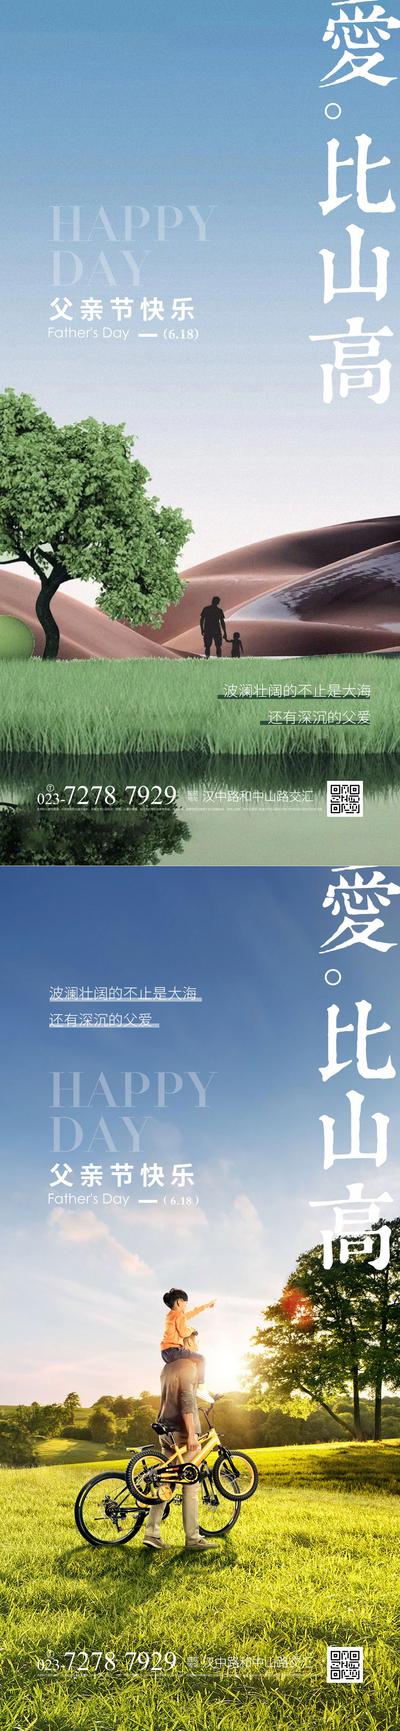 南门网 广告 海报 节日 父亲节 中式 园林 温馨 山水 系列 品质